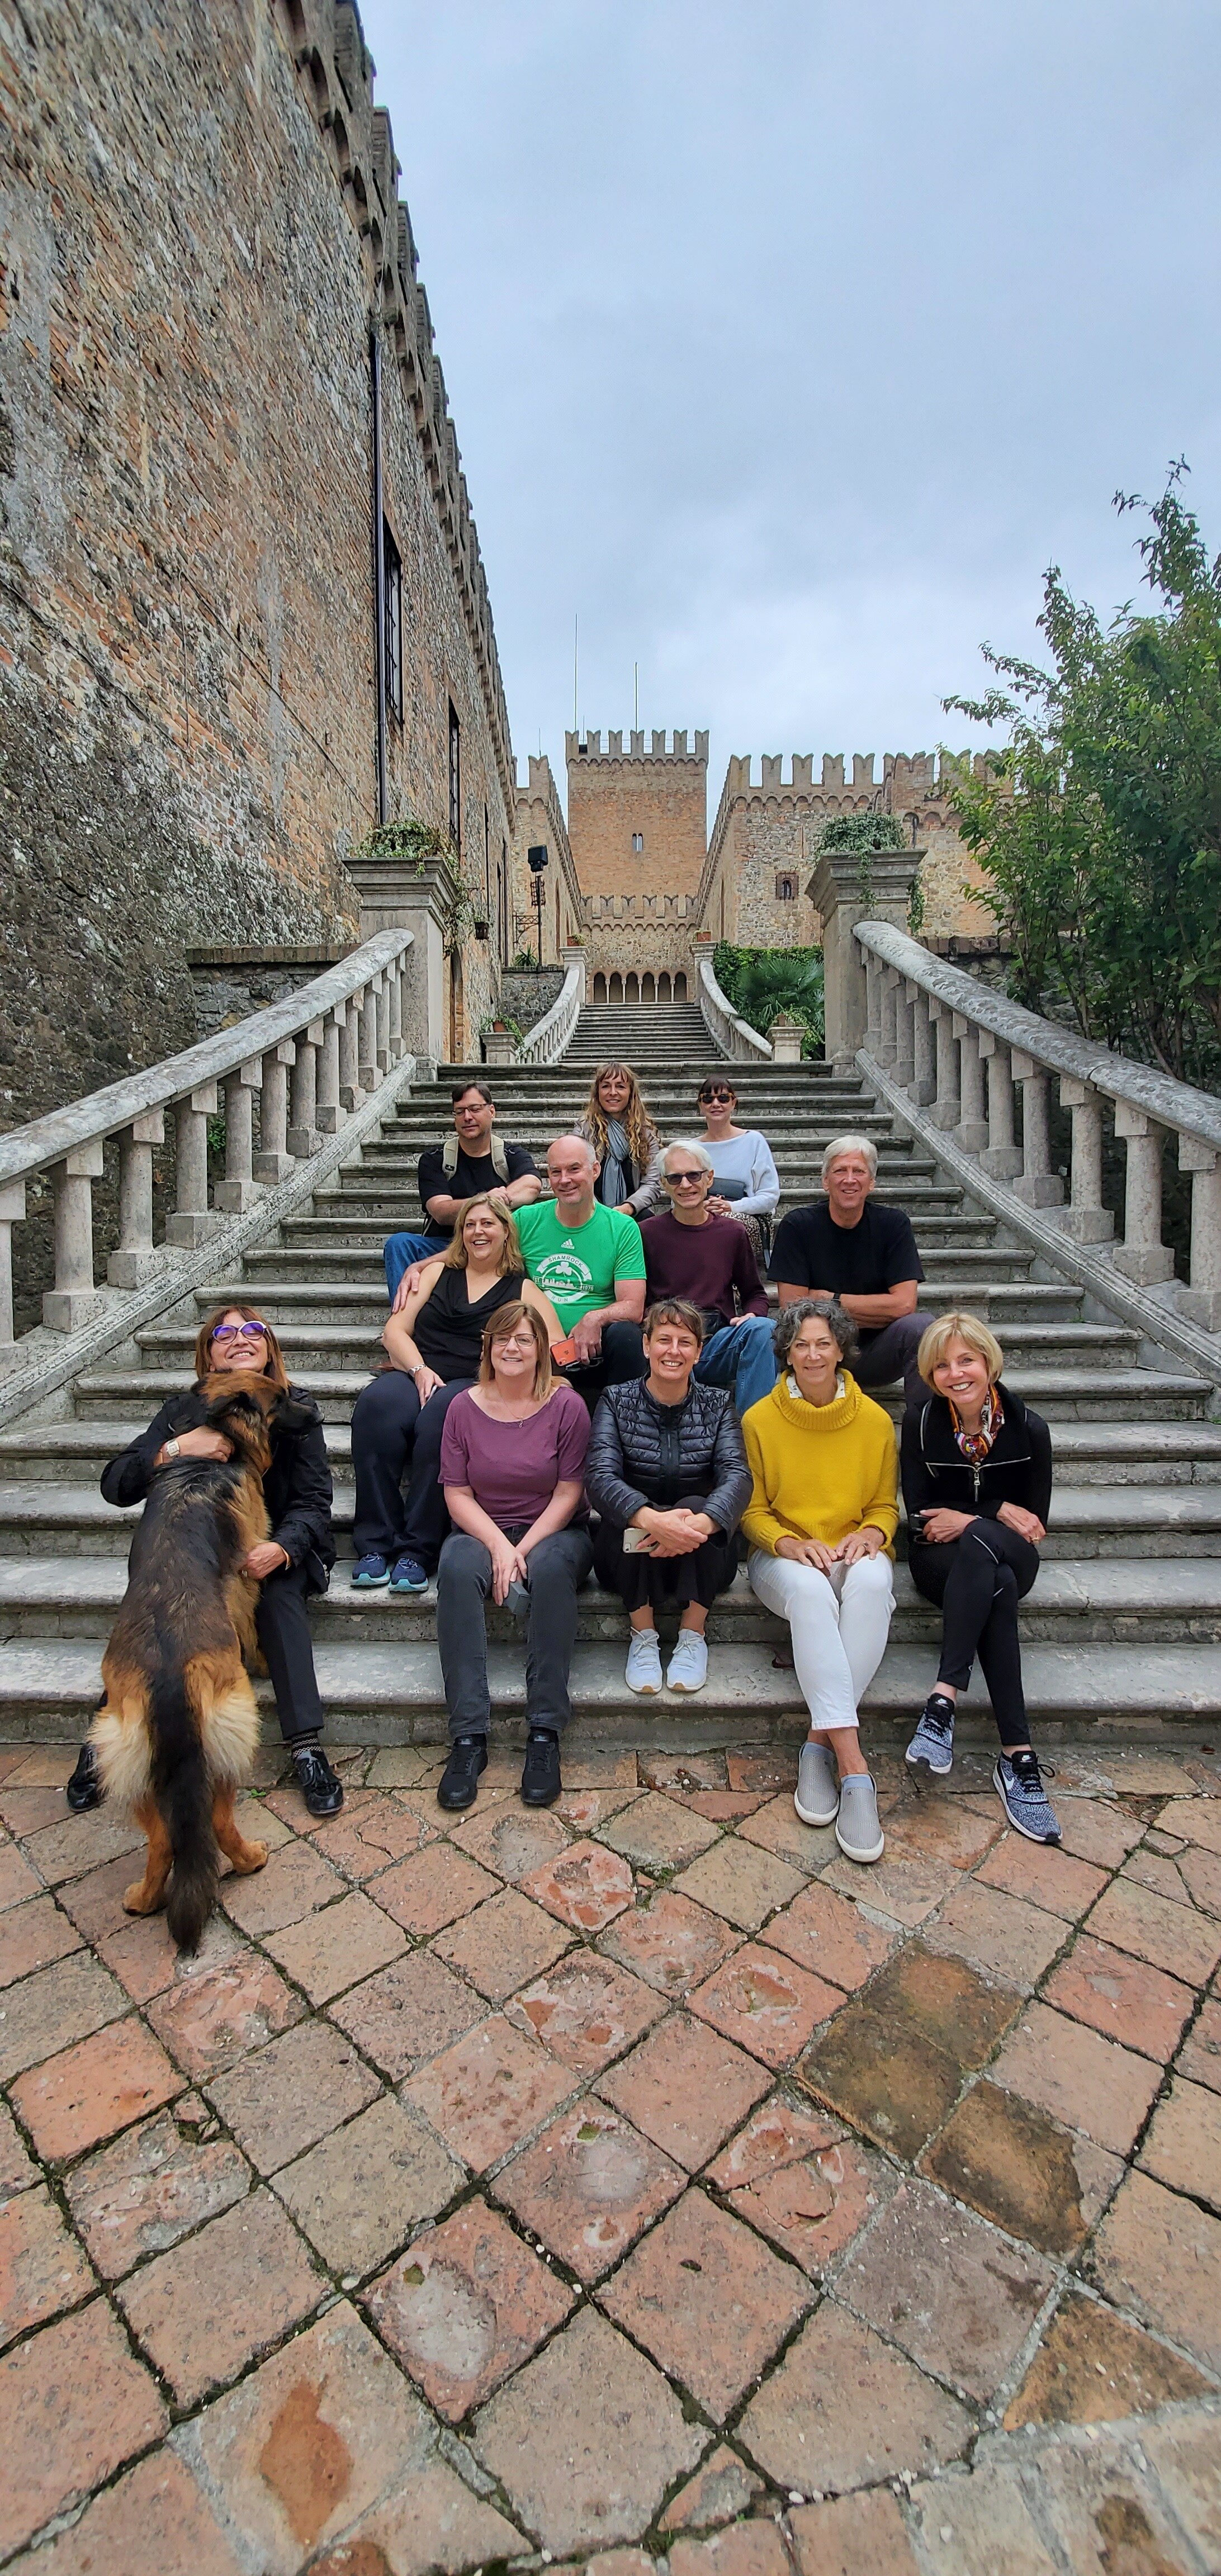 On the steps of castle in Reggio Emilia